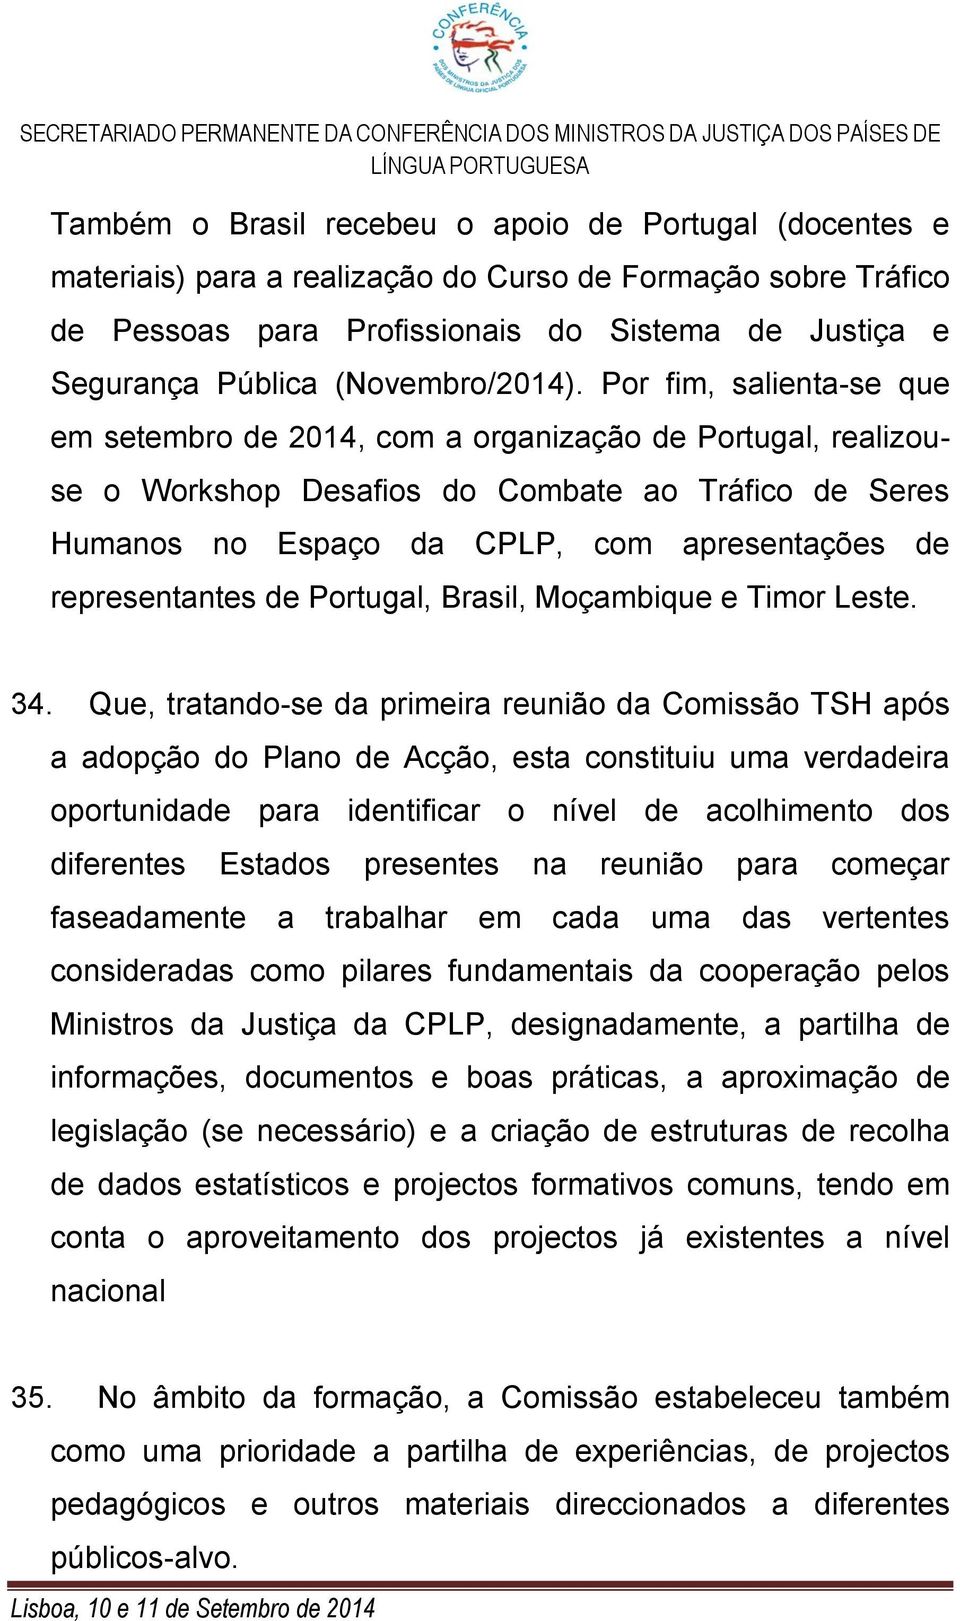 Por fim, salienta-se que em setembro de 2014, com a organização de Portugal, realizouse o Workshop Desafios do Combate ao Tráfico de Seres Humanos no Espaço da CPLP, com apresentações de